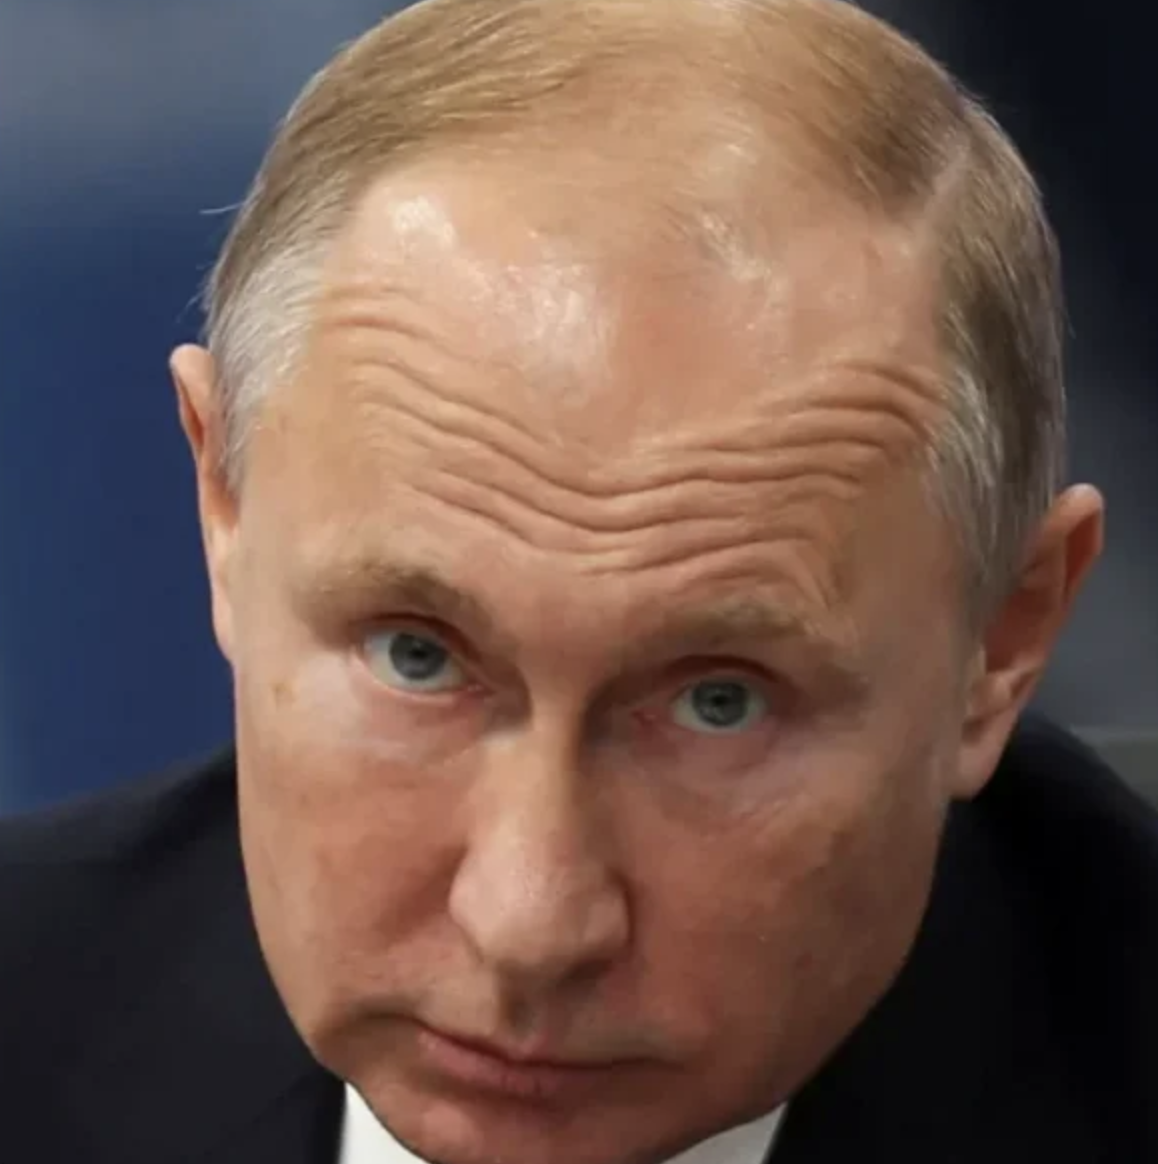 Люди похожие на Путина. Как менялось лицо Путина. Сходство Путина с бабуином. Крайне удивлены